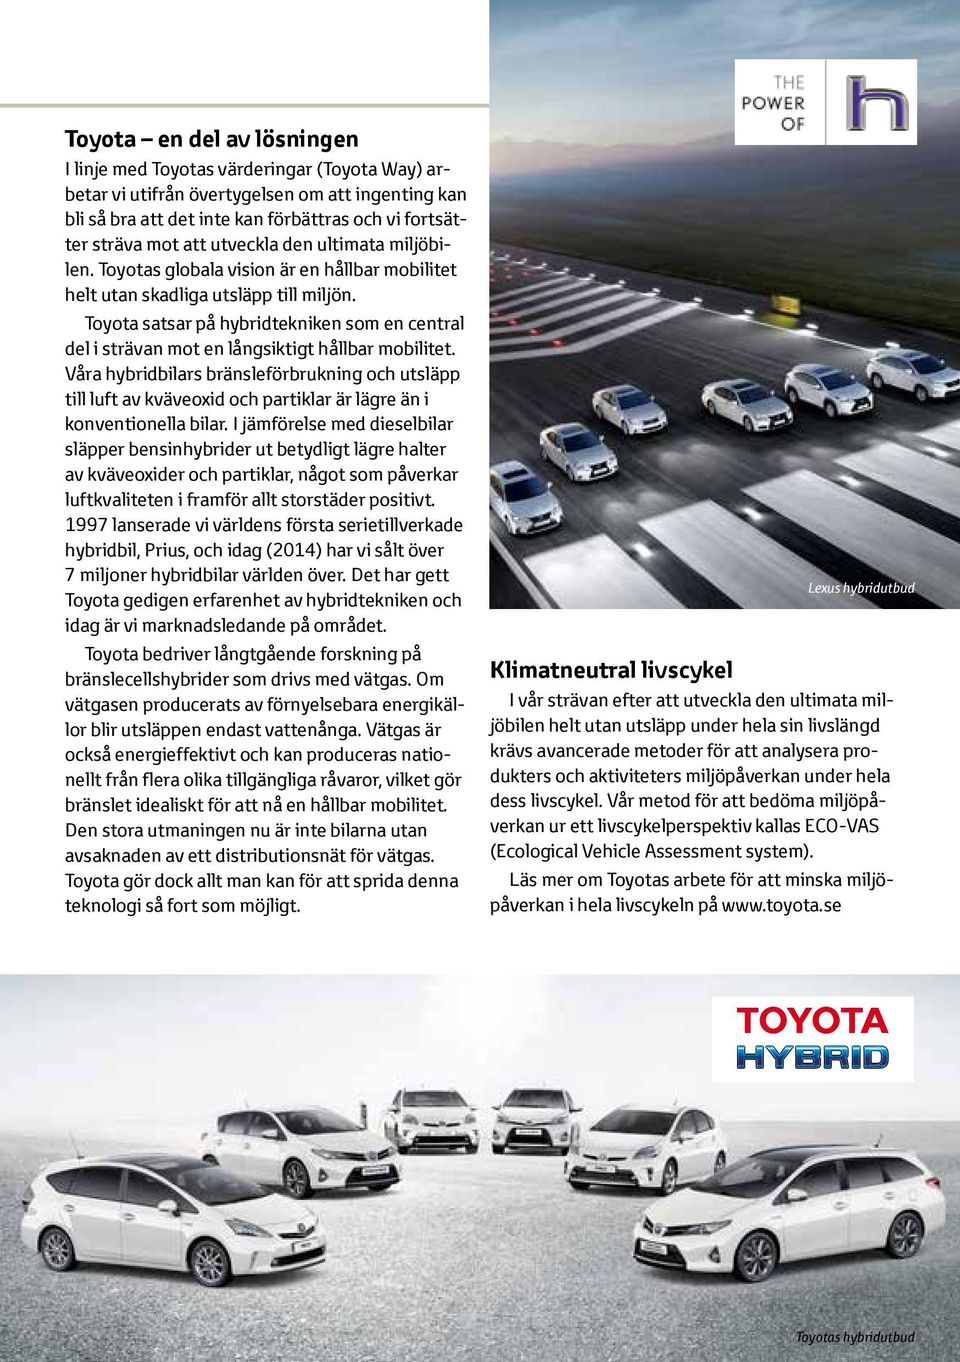 Toyota satsar på hybridtekniken som en central del i strävan mot en långsiktigt hållbar mobilitet.